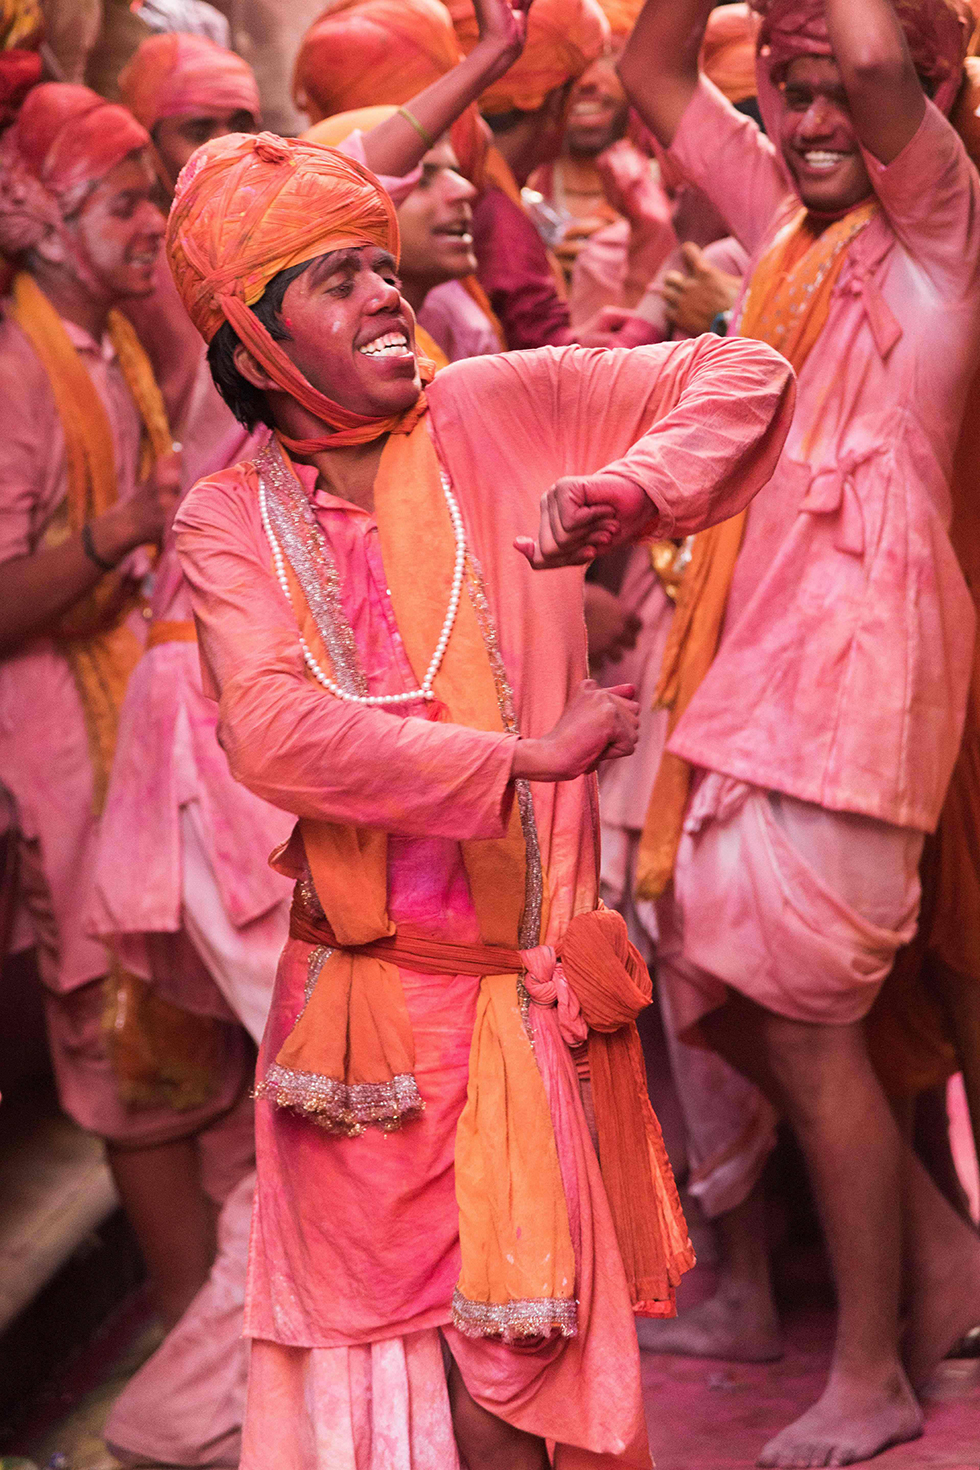 בעיר ברסאנה שבהודו חגגו את פסטיבל הצבעים הנודע שבמהלכו מתיזים המשתתפים צבע זה על זה. הפסטיבל שנחגג ברחבי המדינה מציין את סיום החורף ואת ניצחון הטוב על הרע (צילום: AFP) (צילום: AFP)